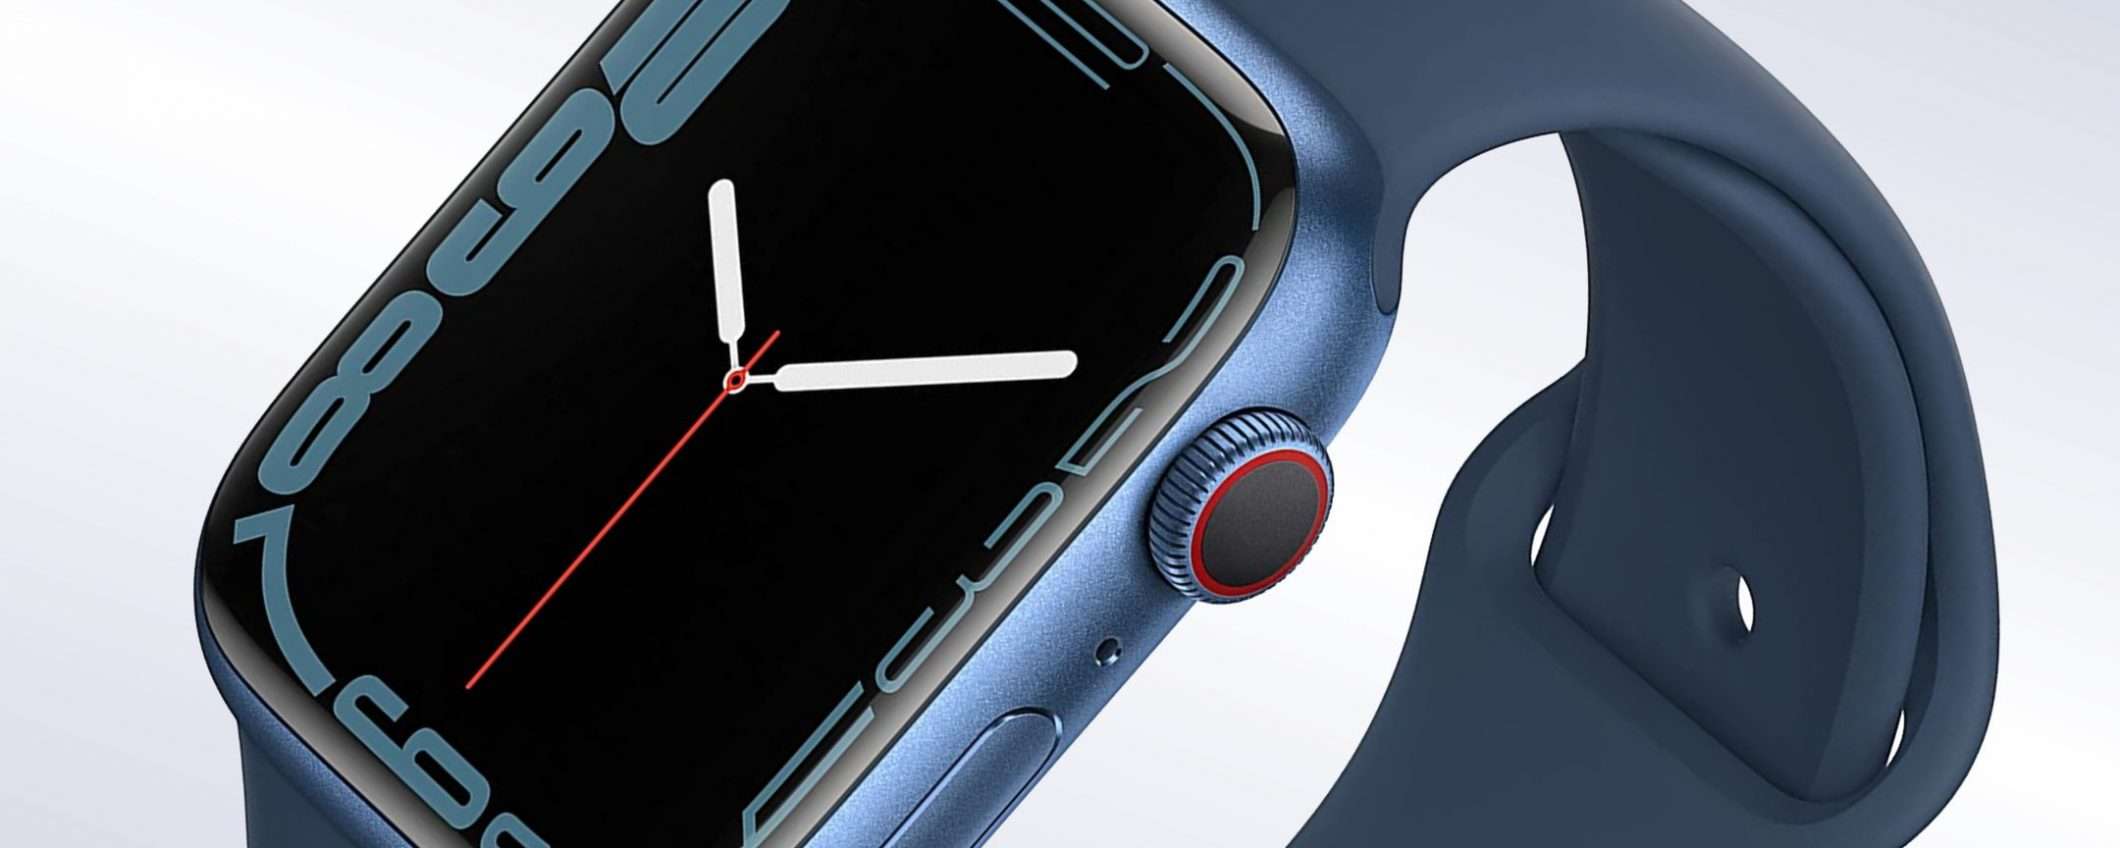 Apple Watch Series 7 sta per arrivare: ecco quando